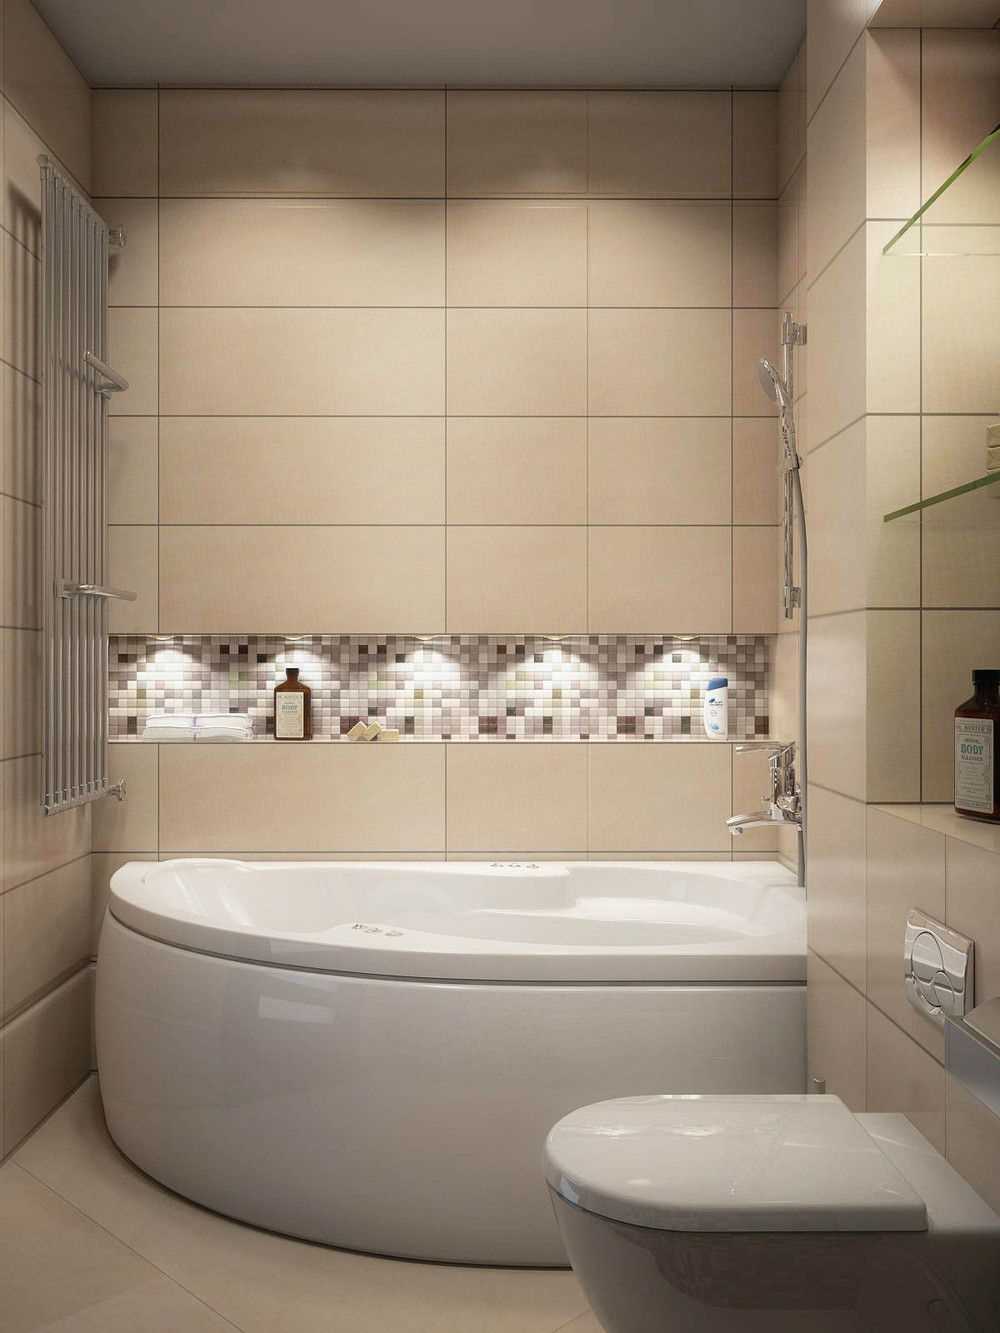 optie van een mooie stijl van een badkamer met een hoekbad